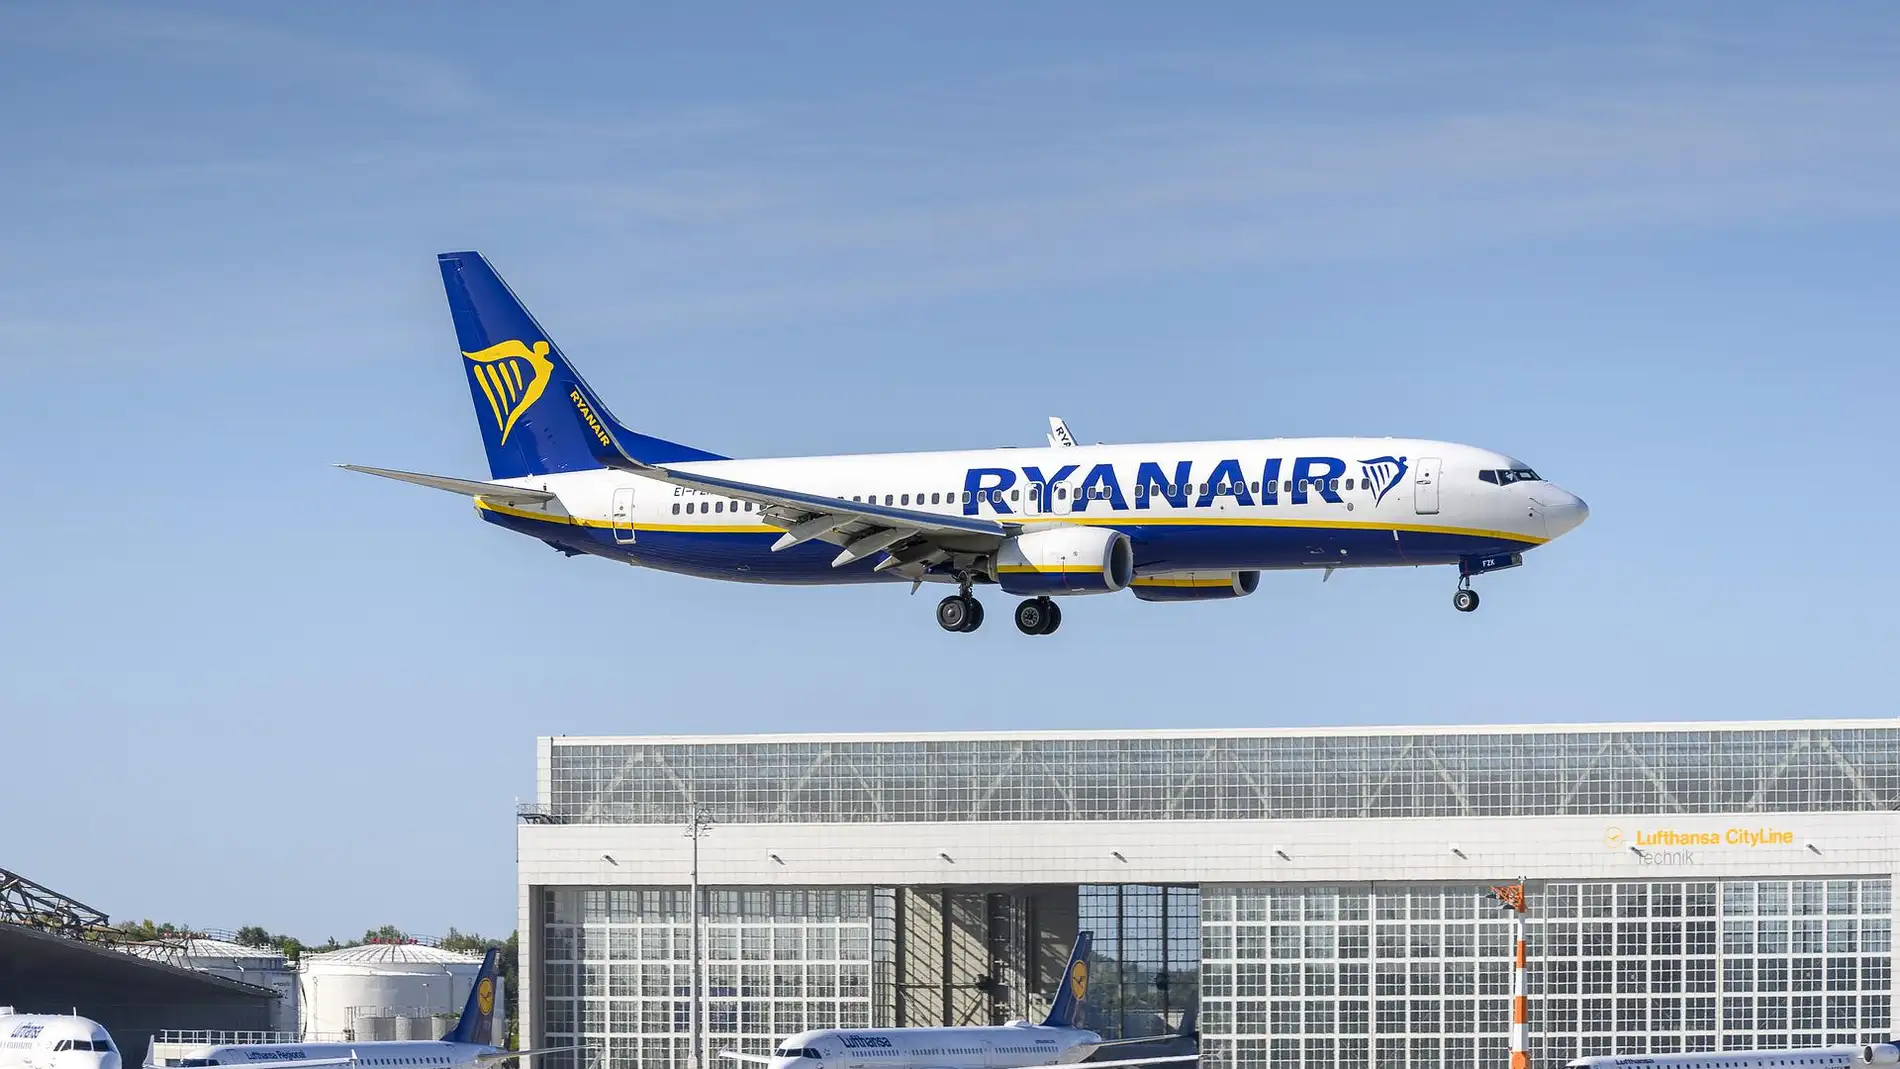 Vuelo afectado por la huelga de Ryanair: ¿puedo cambiarlo sin que me cueste dinero?